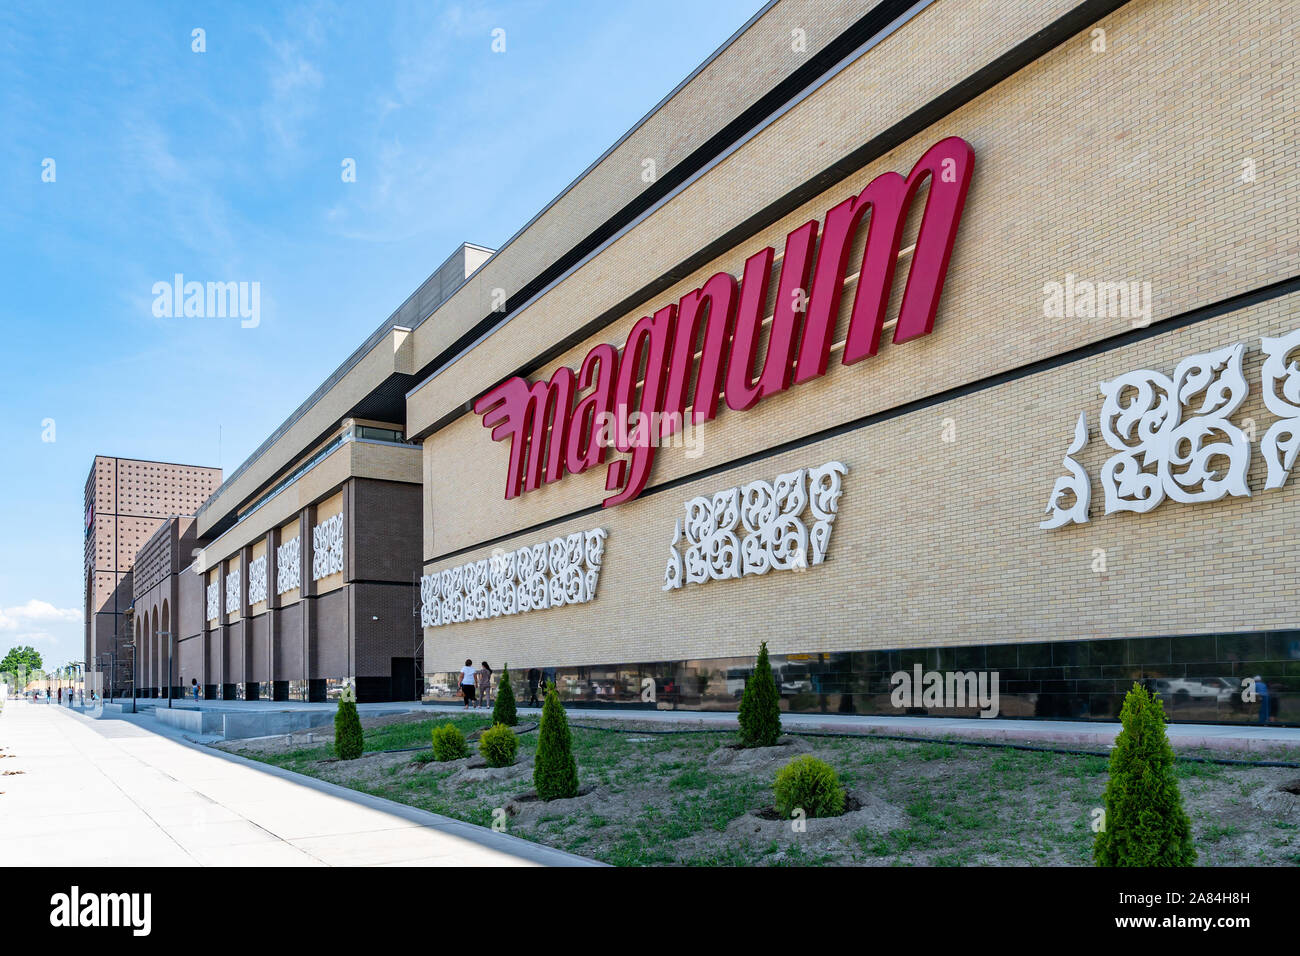 Taraz Mart Einkaufszentrum Magnum Supermarkt Werbung auf der Fassade des Gebäudes an einem sonnigen blauen Himmel Tag Stockfoto